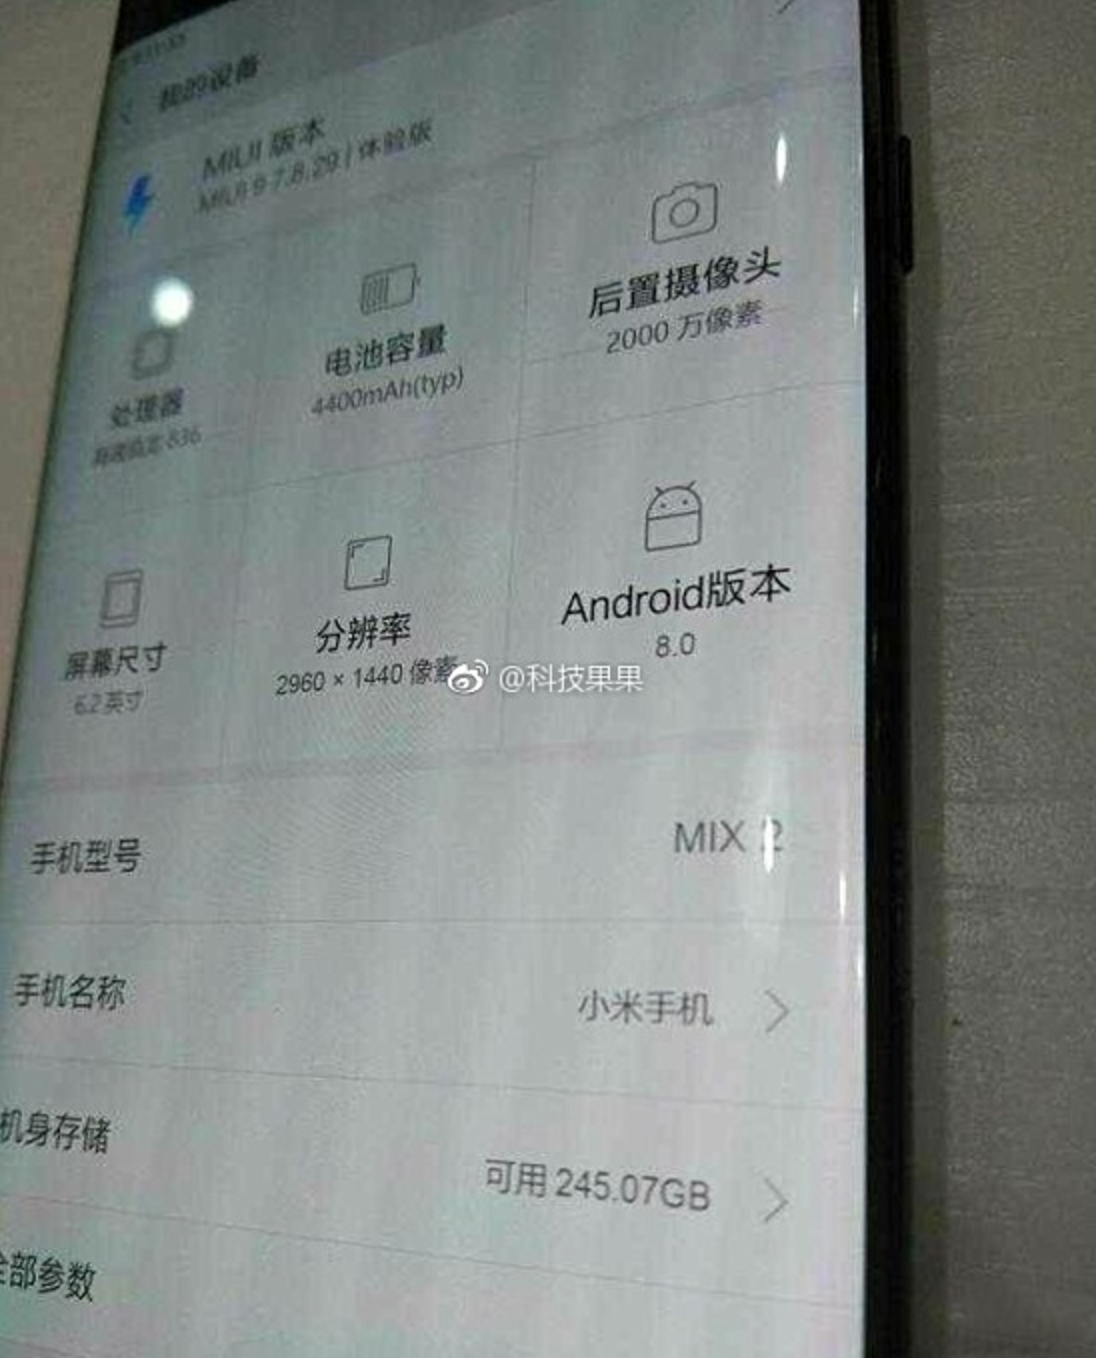 หลุดข้อมูล Xiaomi Mi Mix 2 ใช้ Snapdragon 836 พร้อมกับ Android 8.0 Oreo รุ่นใหม่ล่าสุด